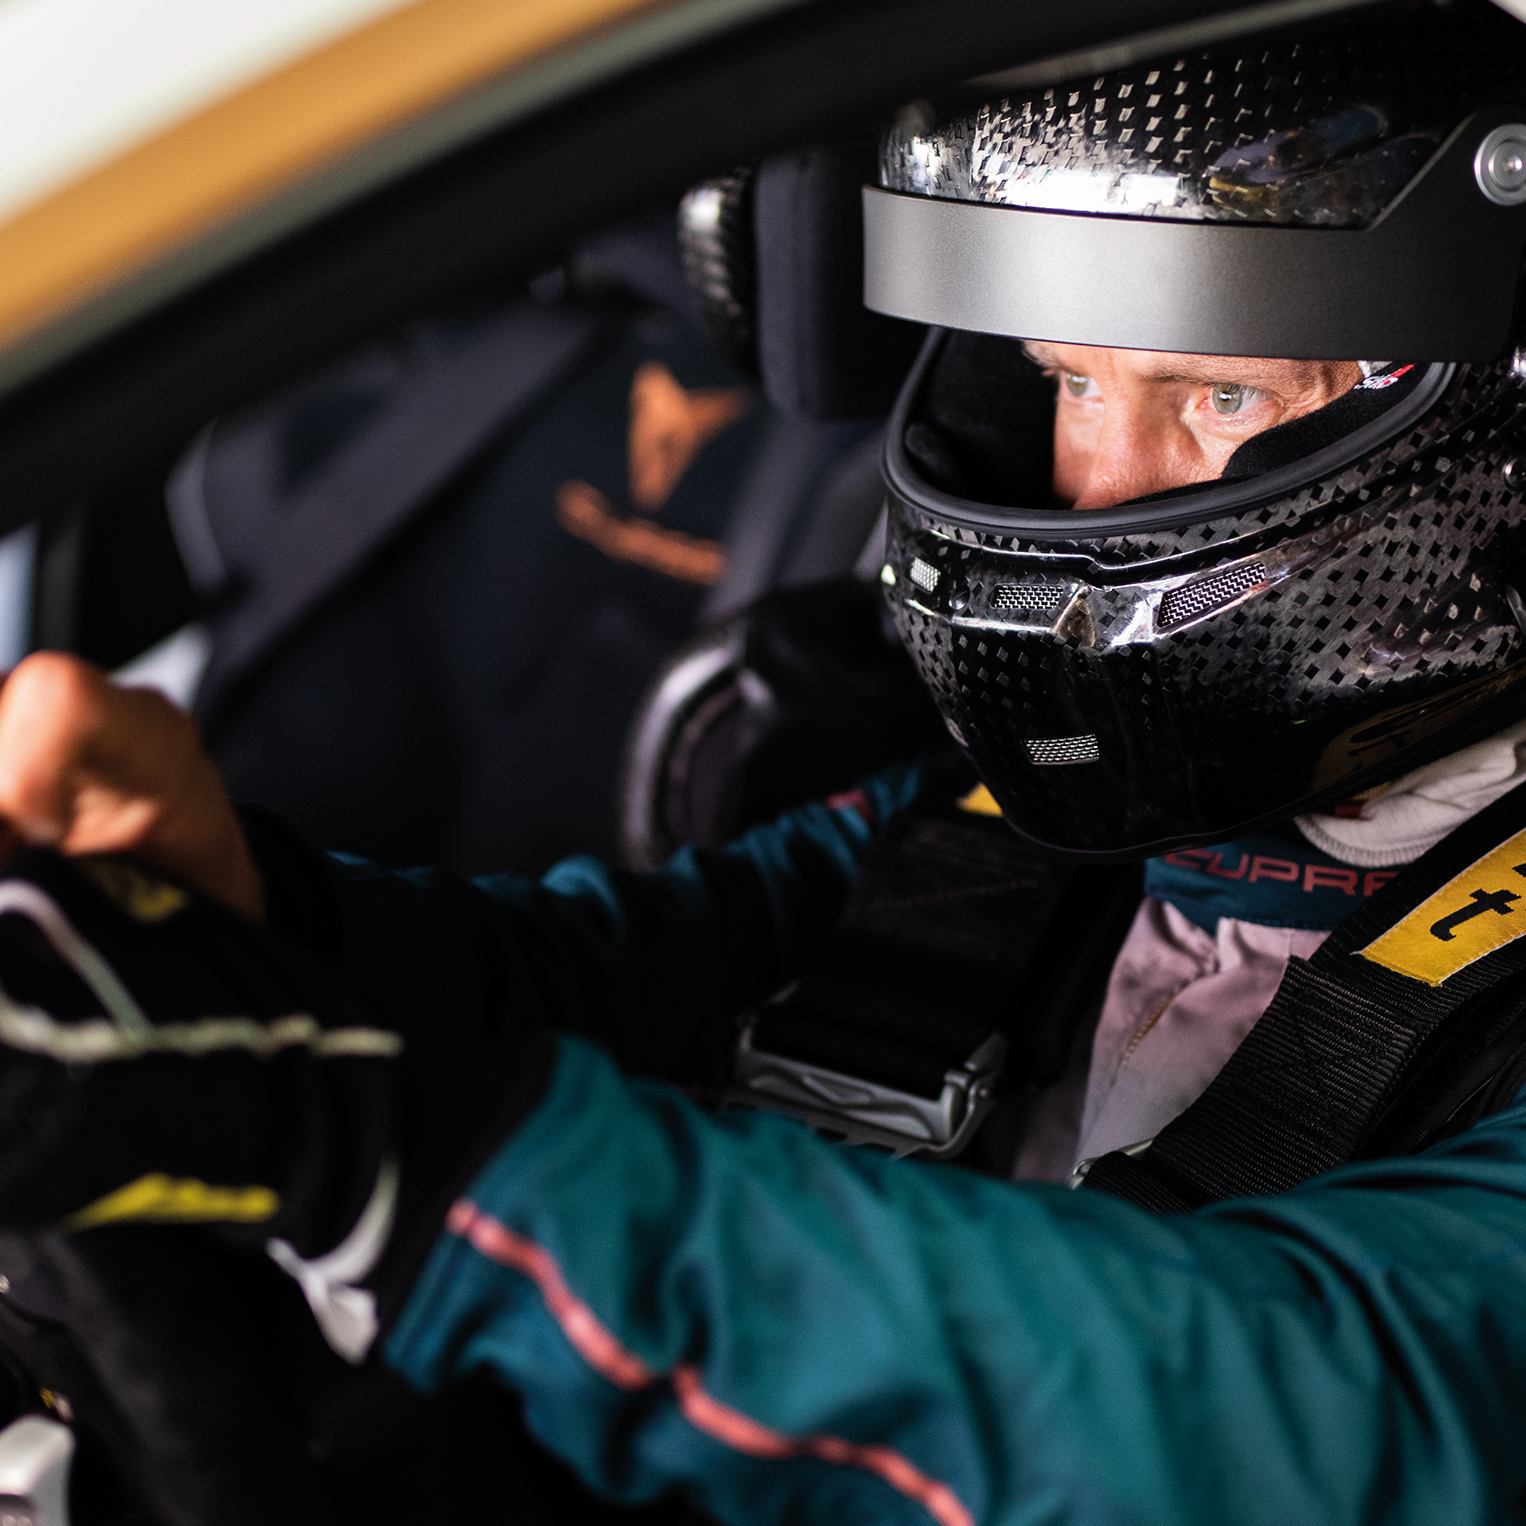 Mattias Ekström wearing a helmet in the driver's seat